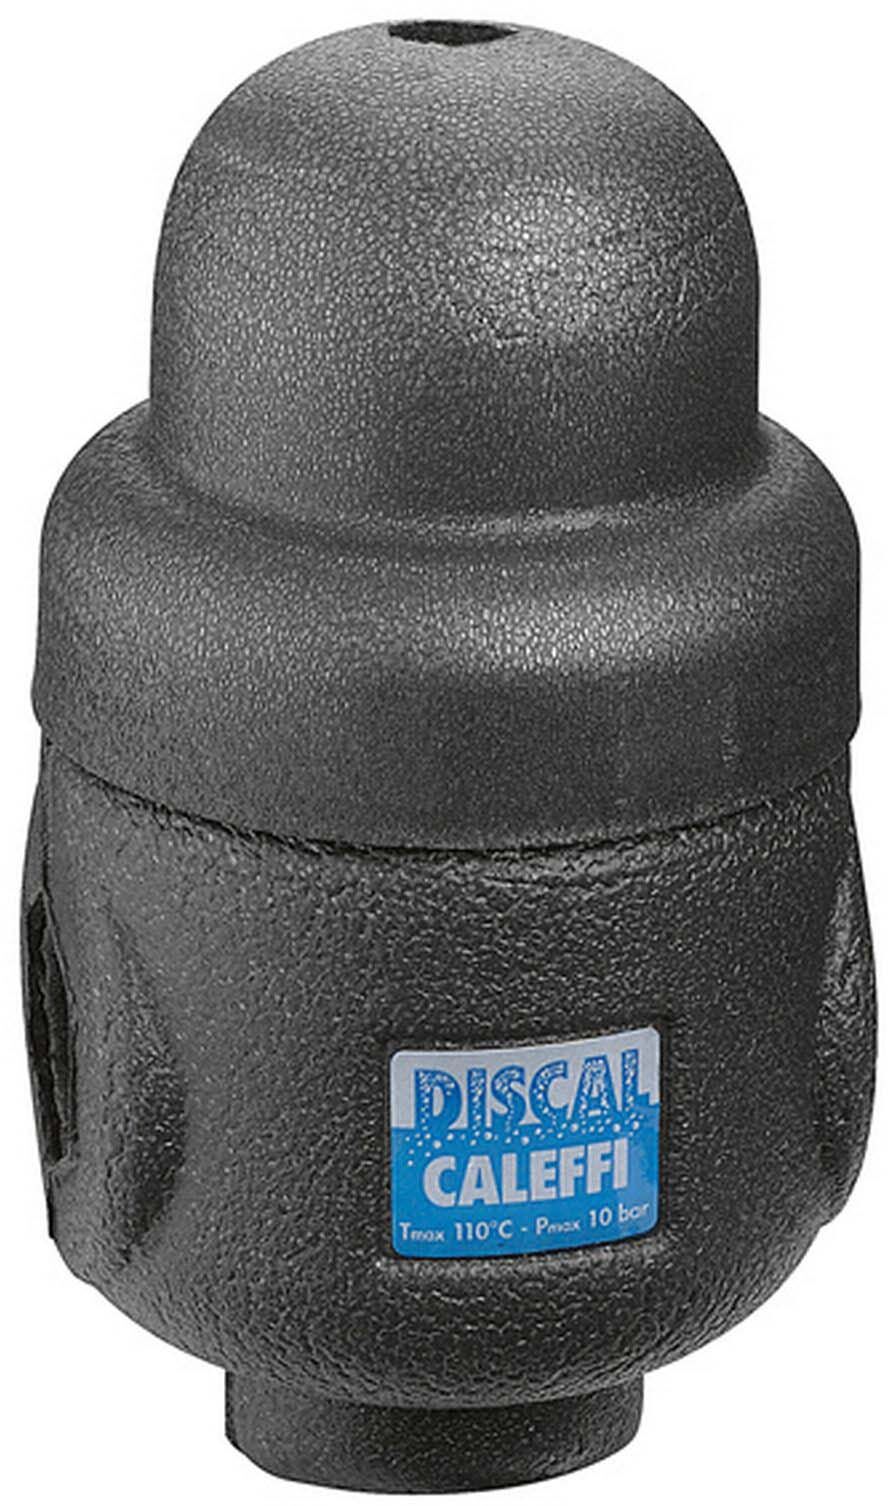 Caleffi Discal Isolierung CBN551007 für Mikroblasenabscheider, für 551007-551008